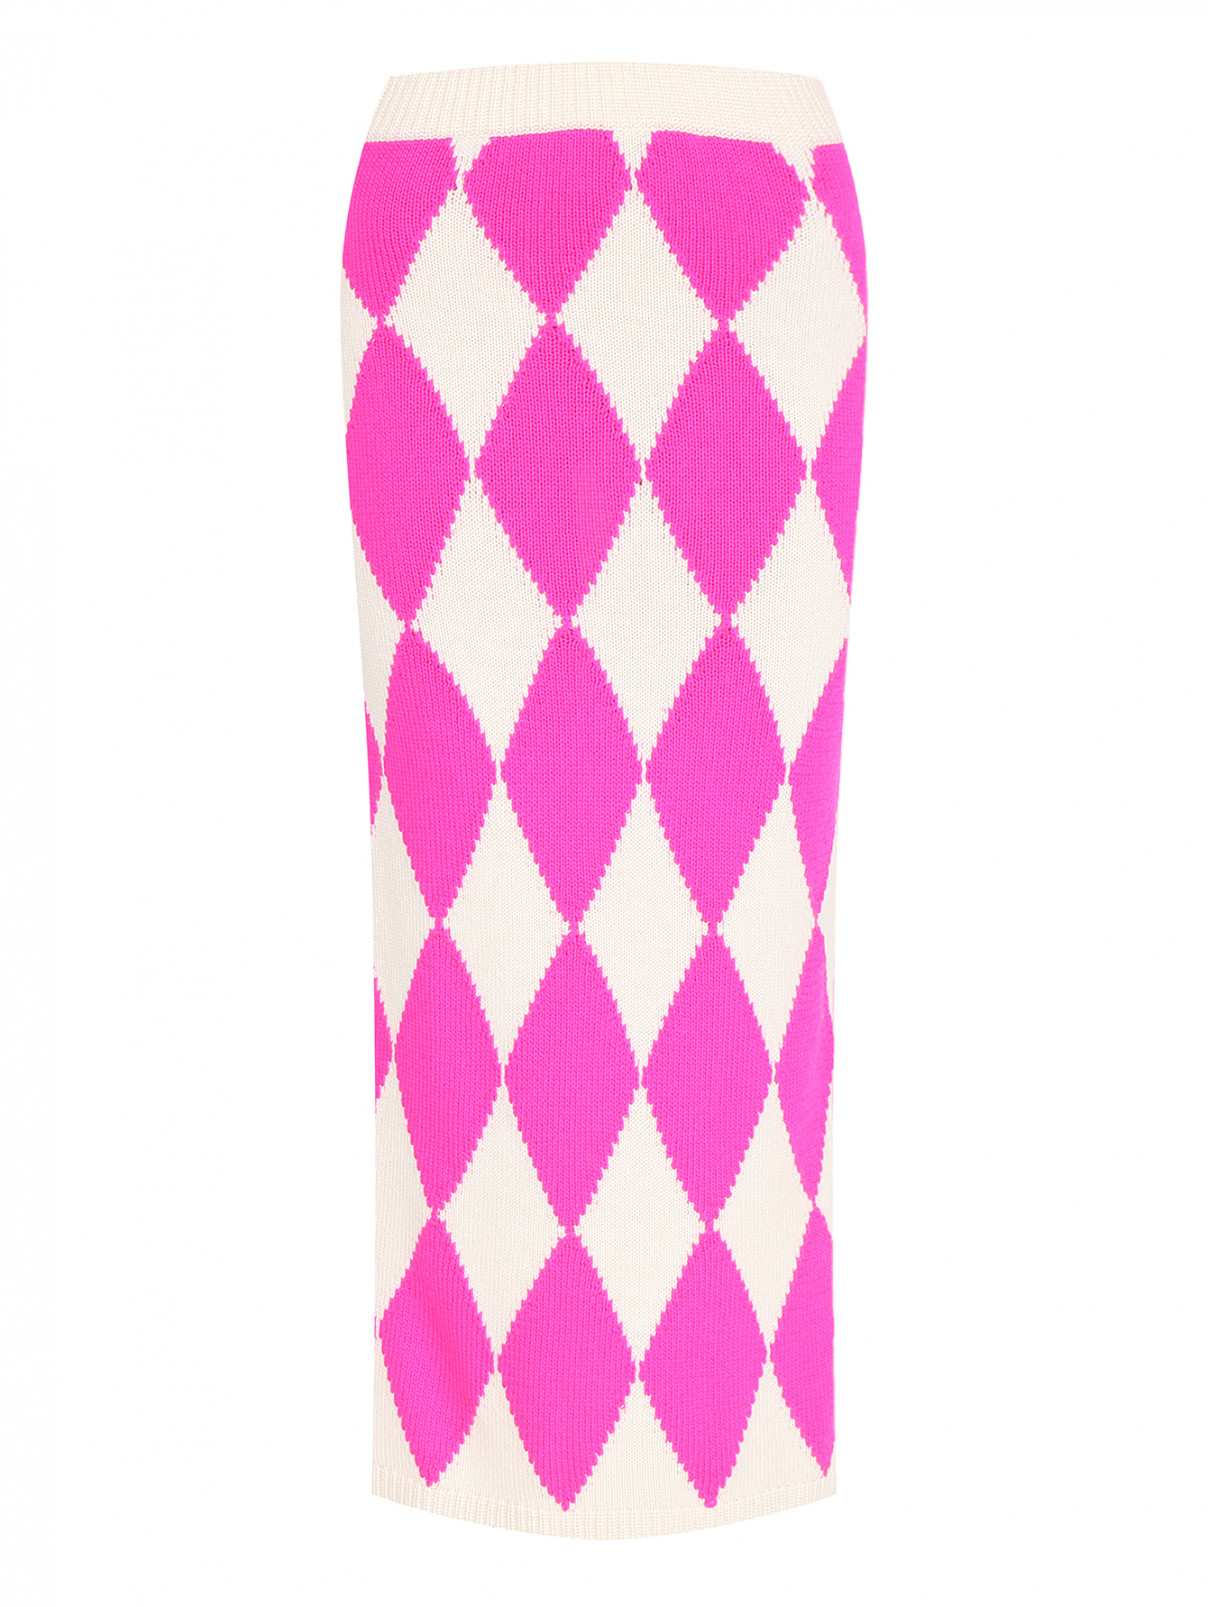 Трикотажная юбка с кашемиром Liviana Conti  –  Общий вид  – Цвет:  Розовый